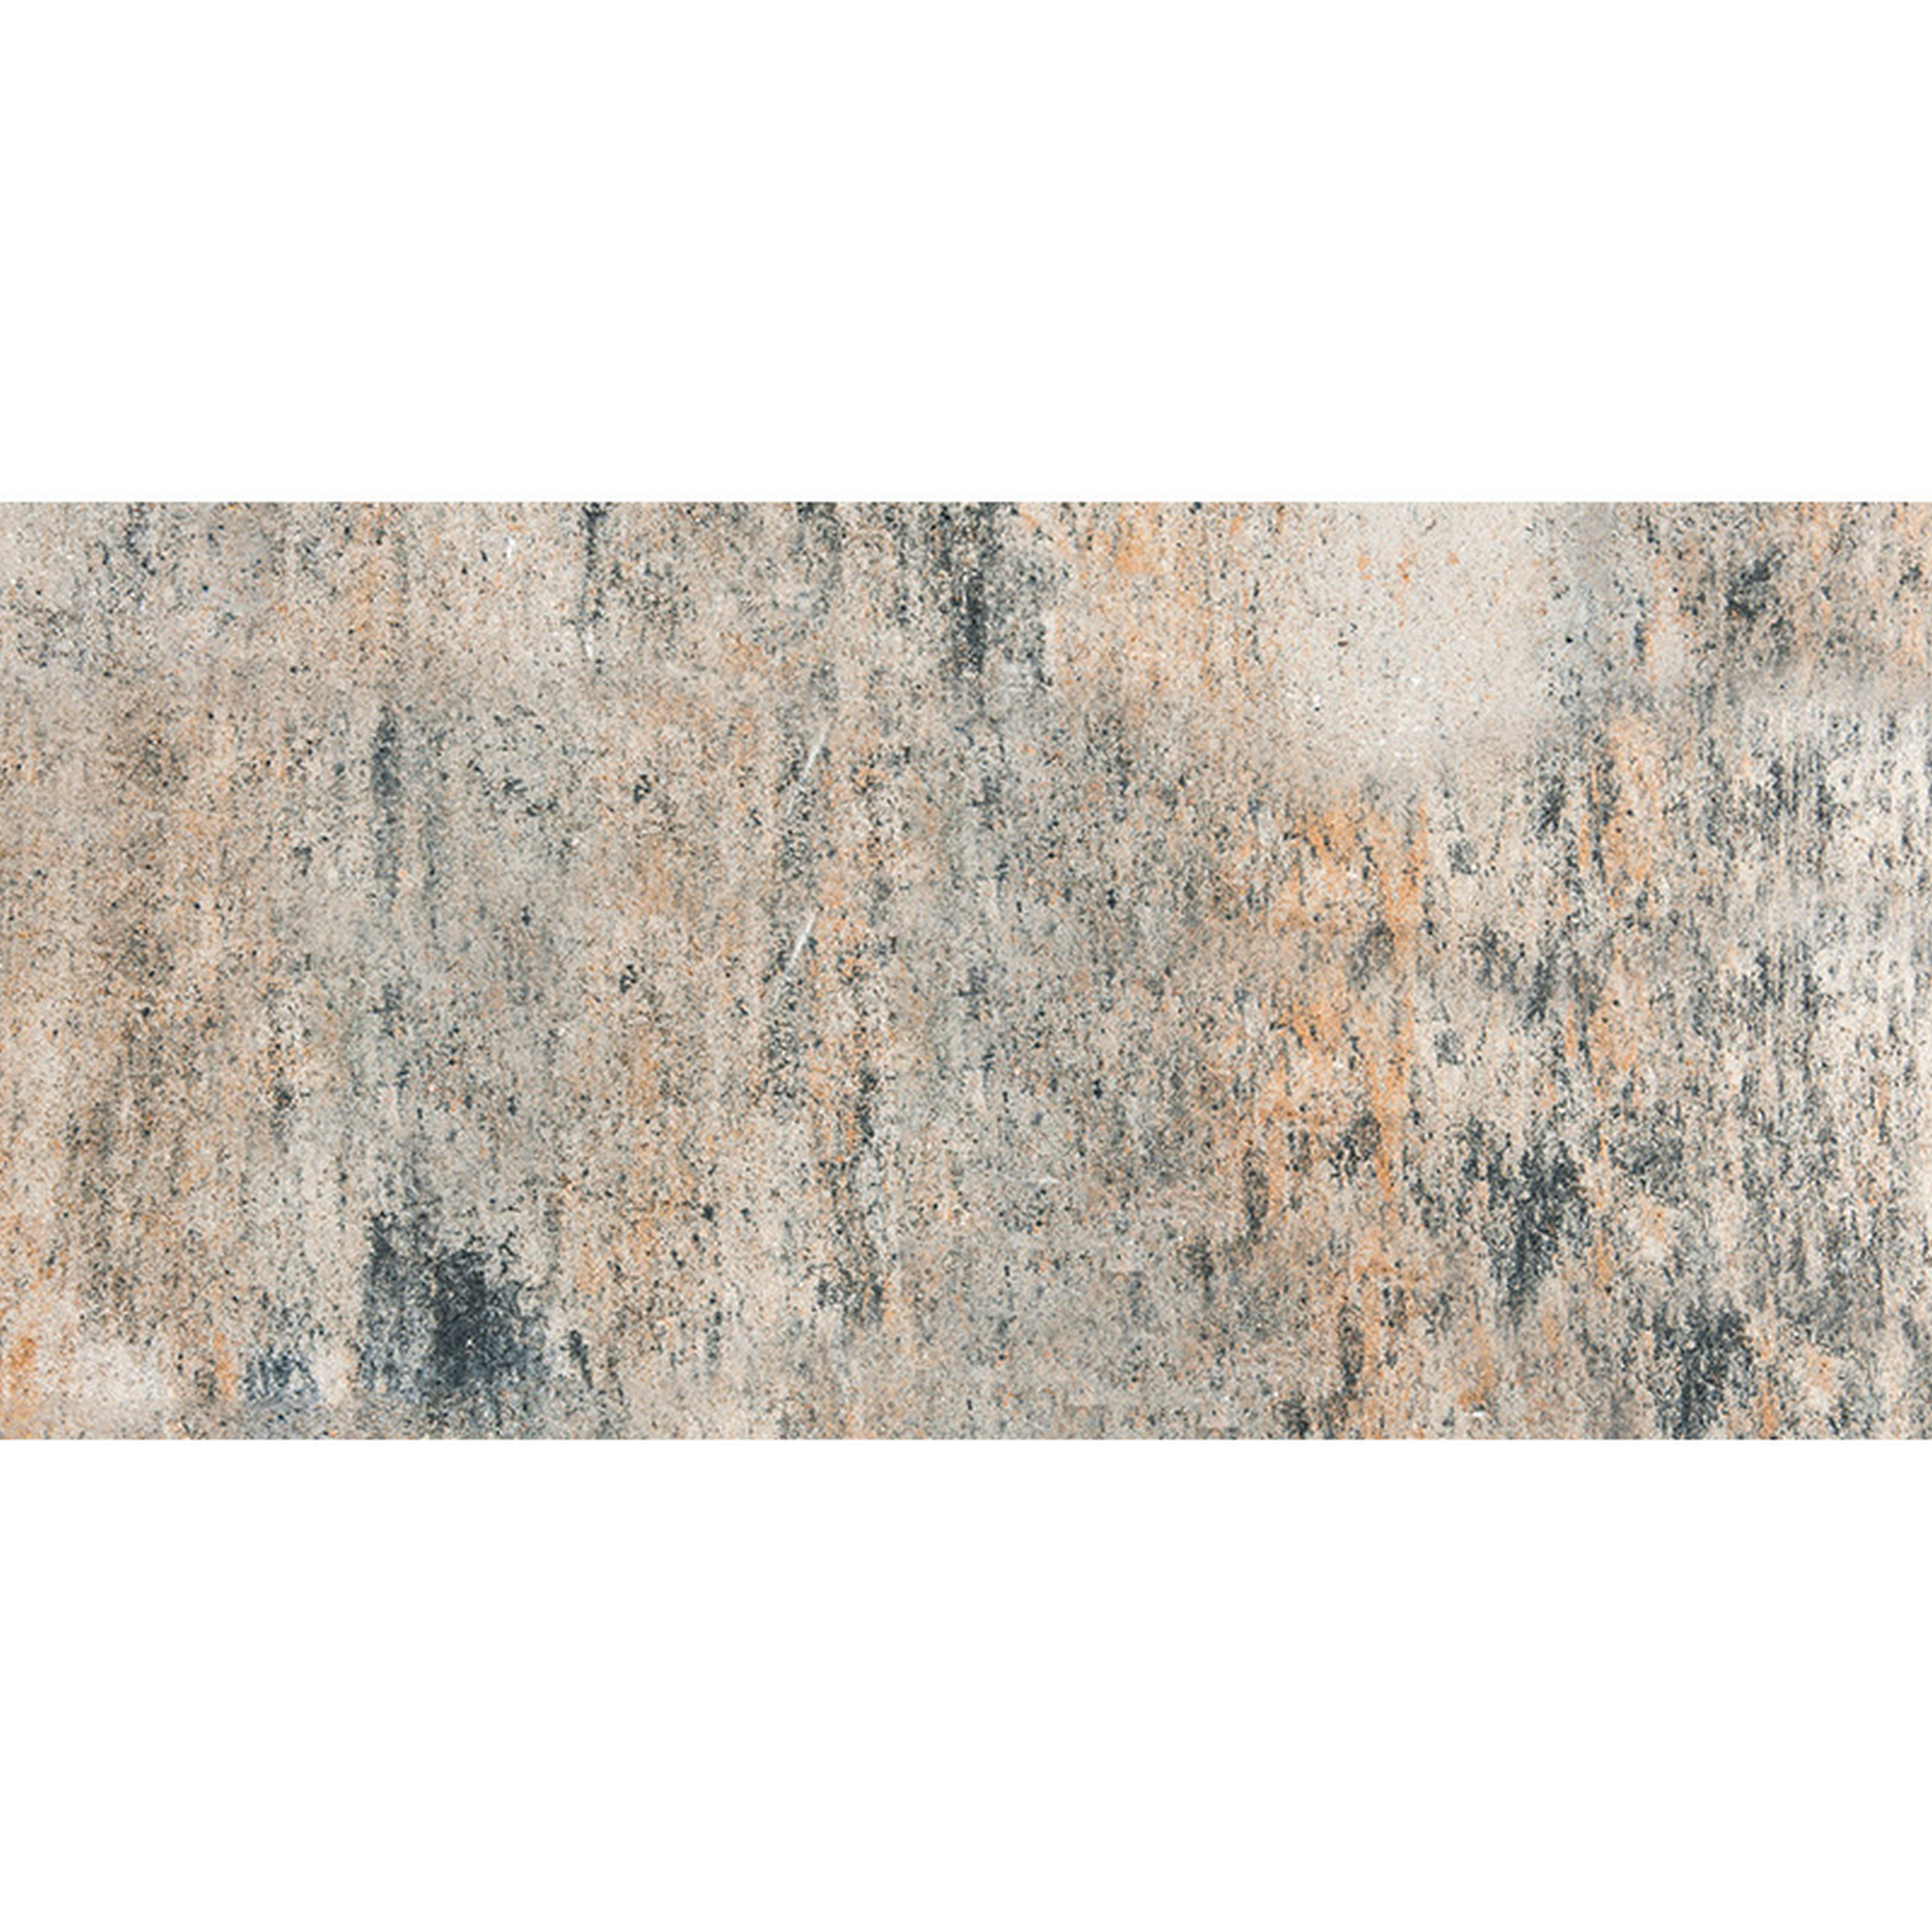 Antikpflaster 'Trend' Beton muschelkalkfarben 30 x 60 x 8 cm + product picture